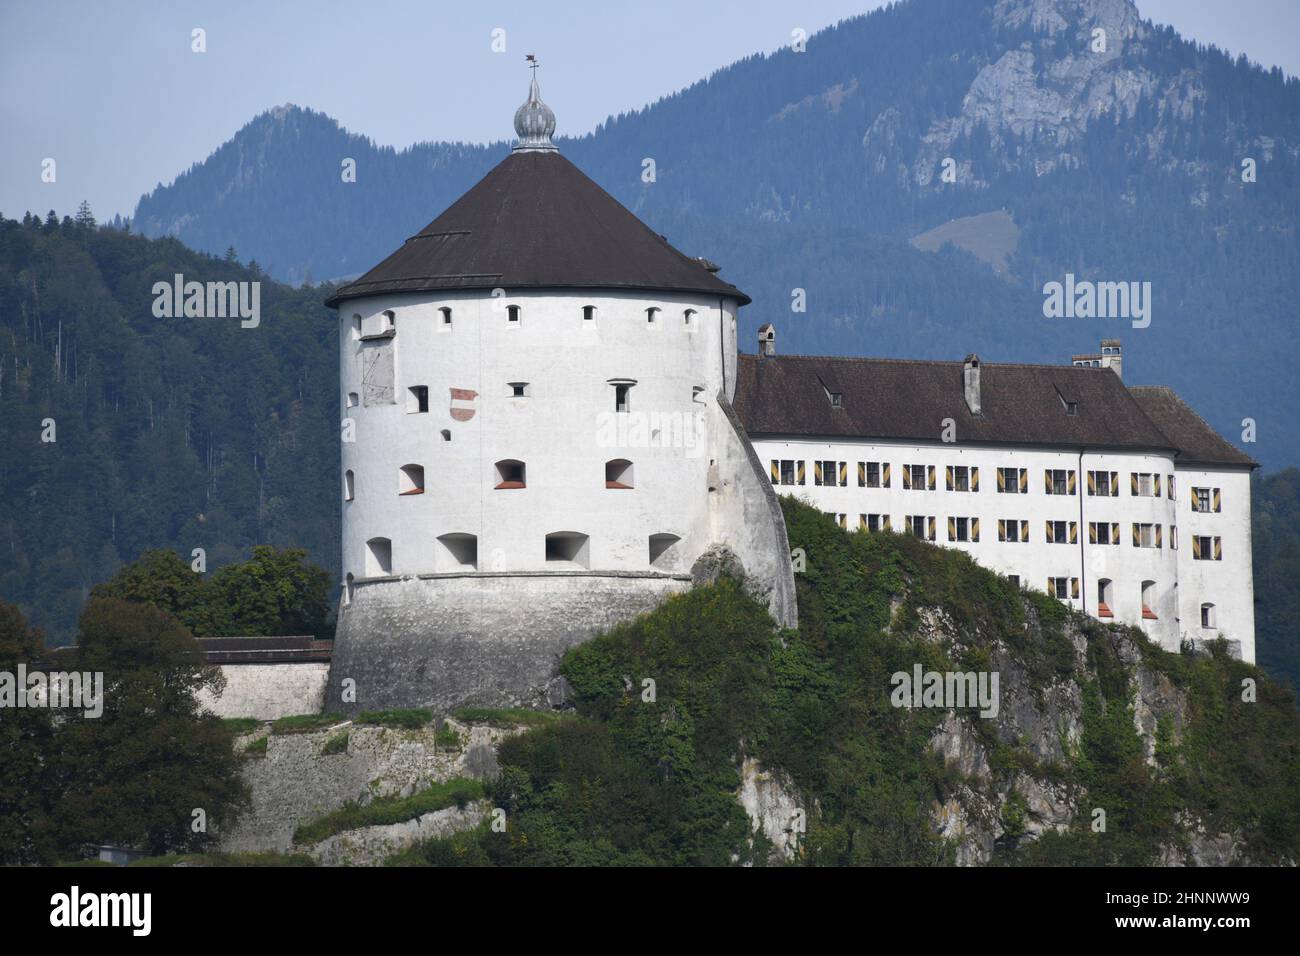 En 1205 la fortaleza de Kufstein en Austria, Tirol fue mencionada por primera vez en un documento. La fortaleza es el punto de referencia de Kufstein. Está situado en la montaña de roca alta 90m directamente en el río Inn. Foto de stock